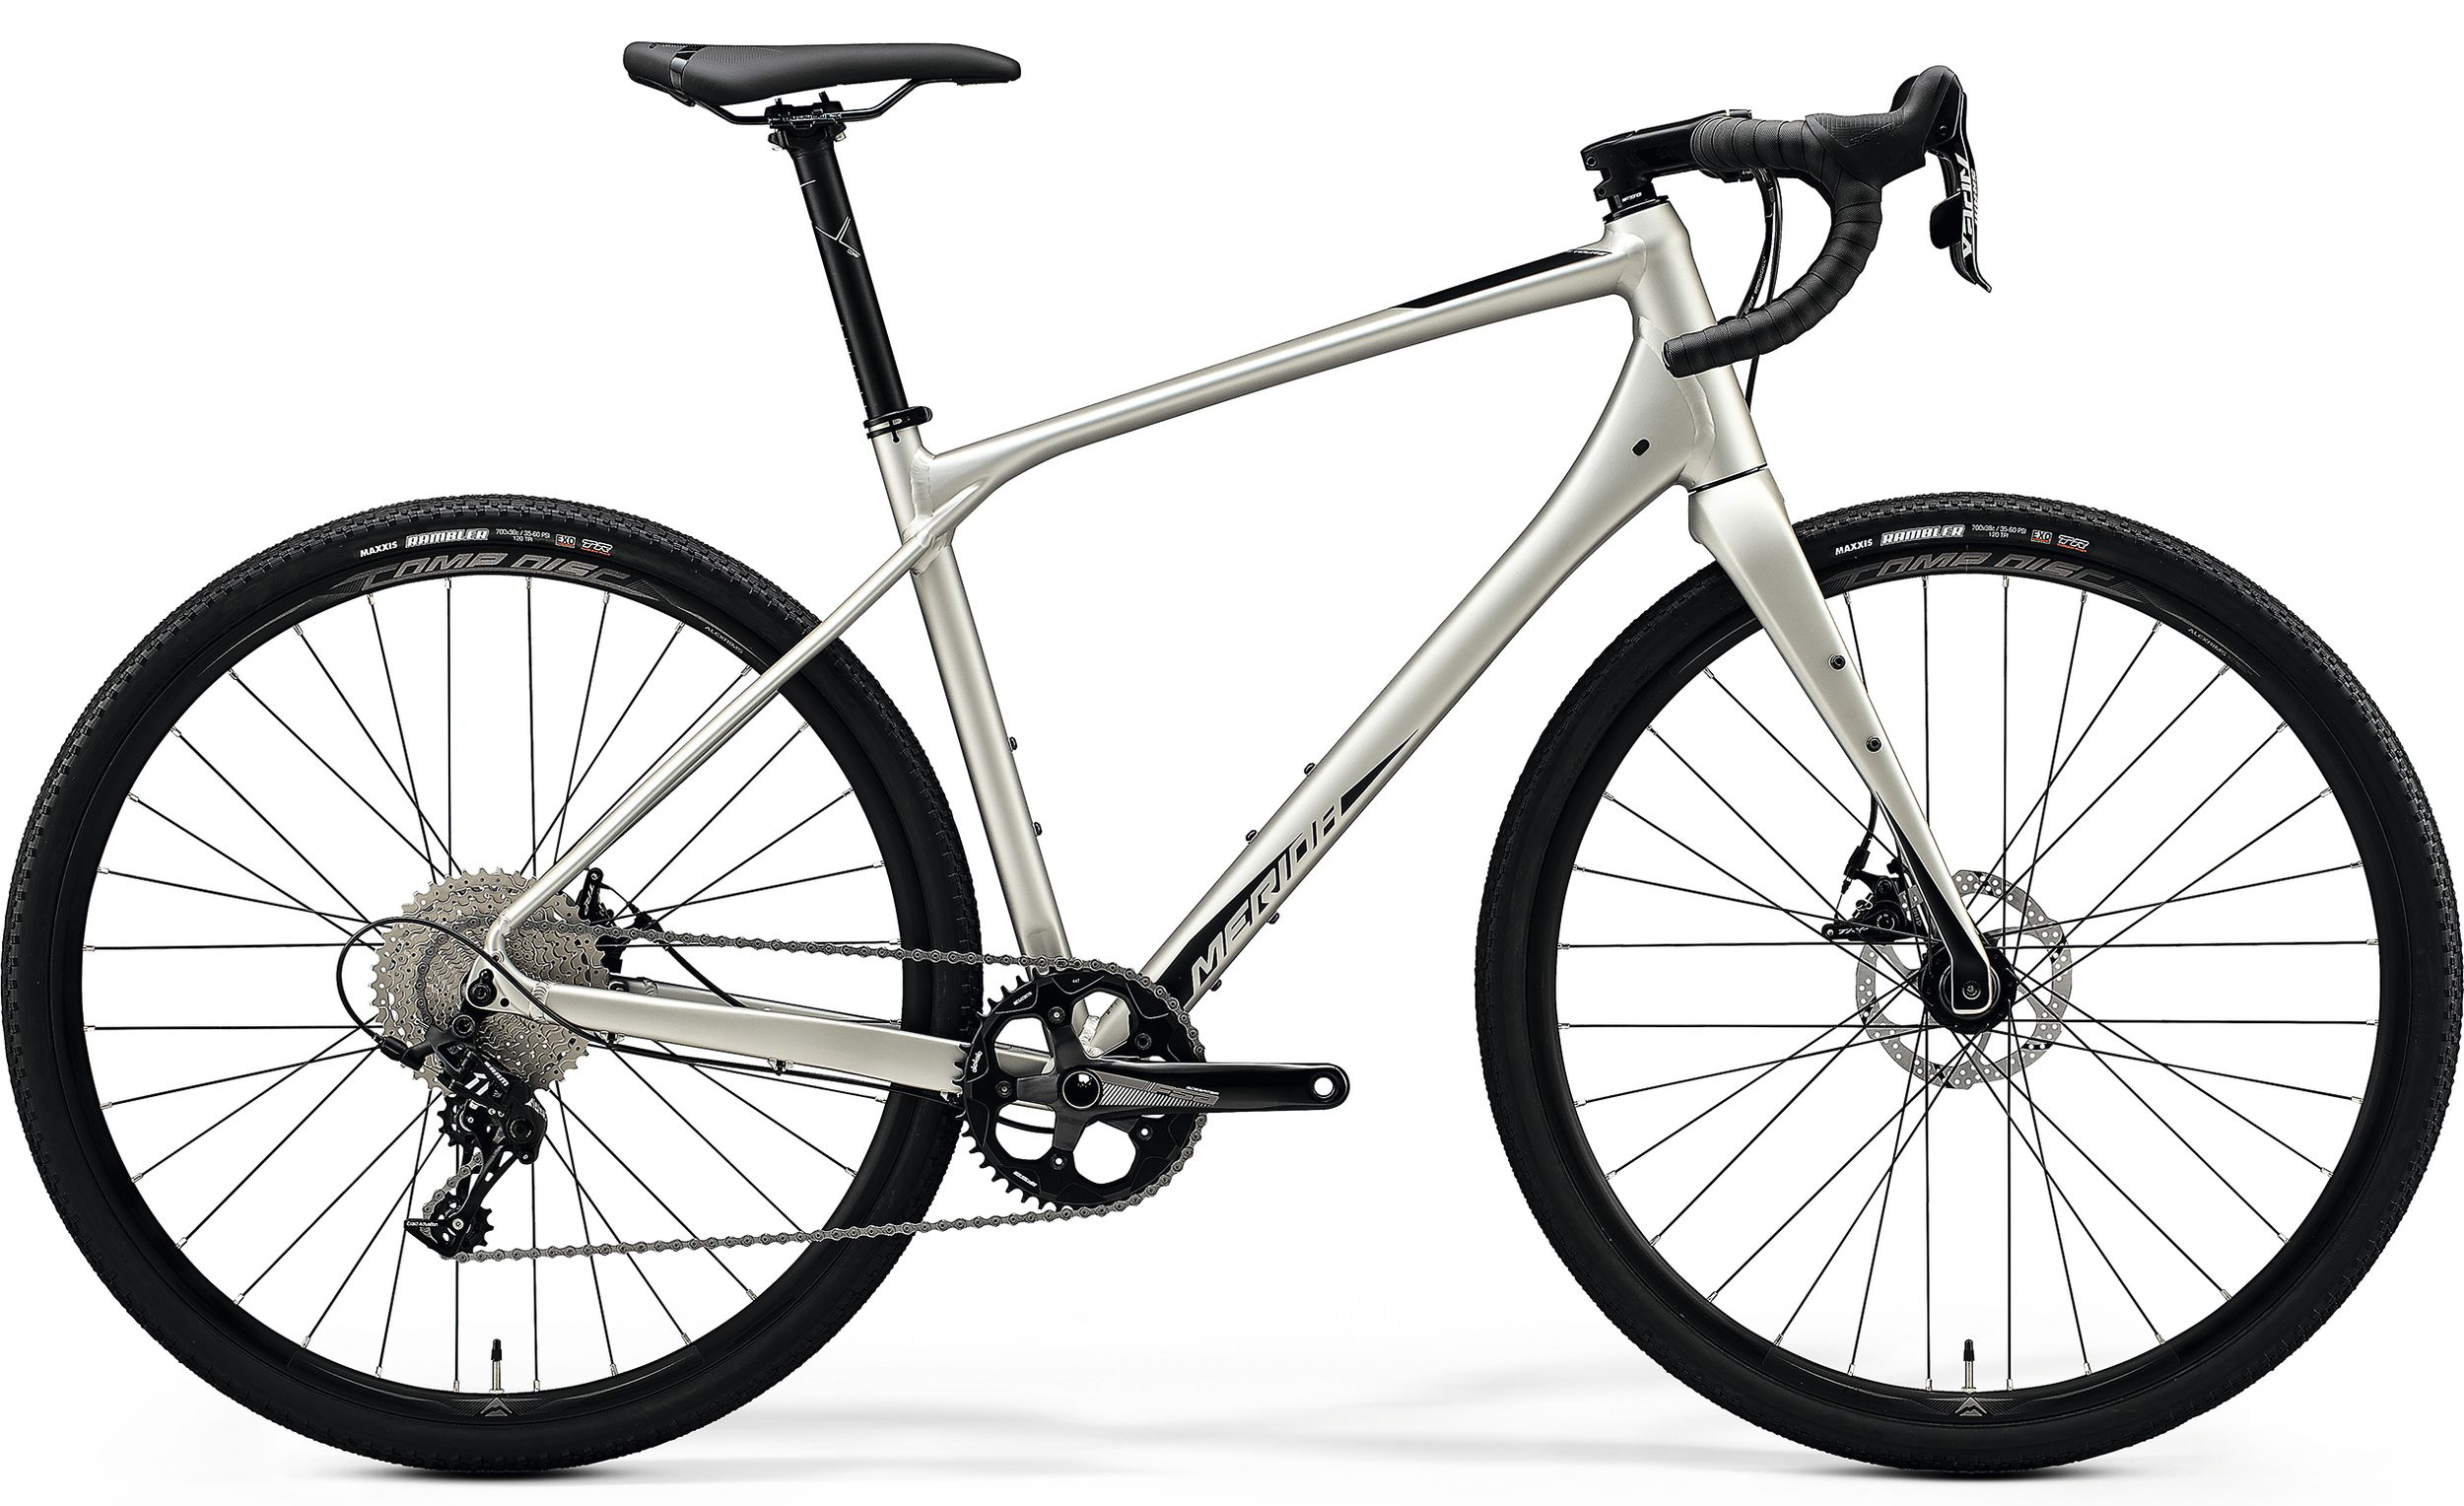  Отзывы о Шоссейном велосипеде Merida Silex 300 2020